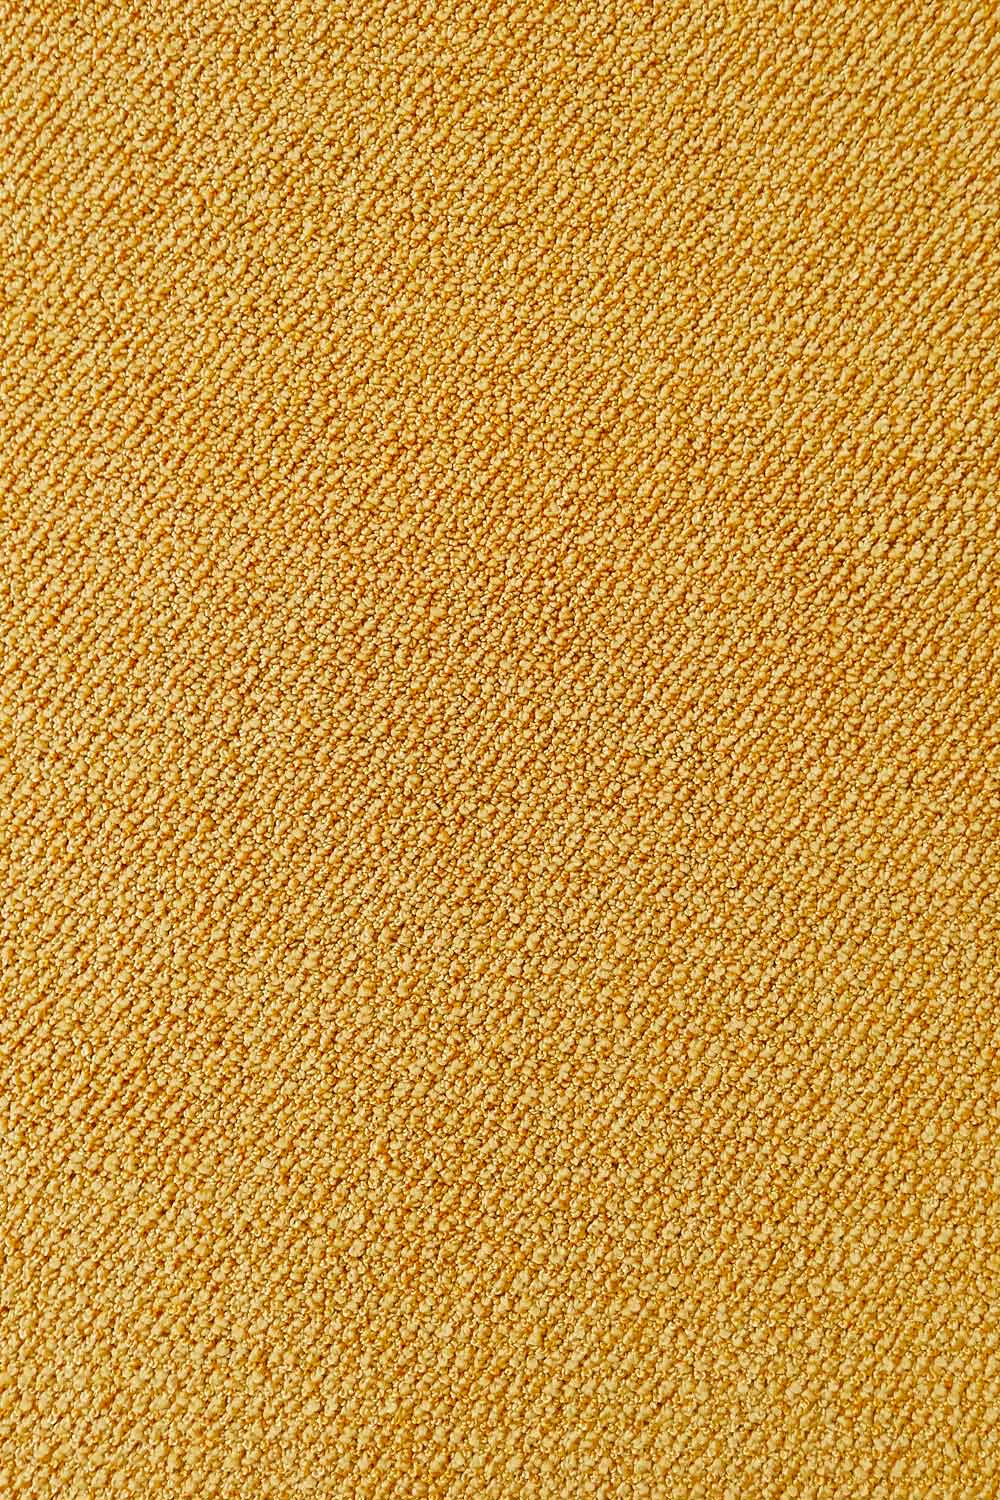 Metrážny koberec Corvino 51 500 cm